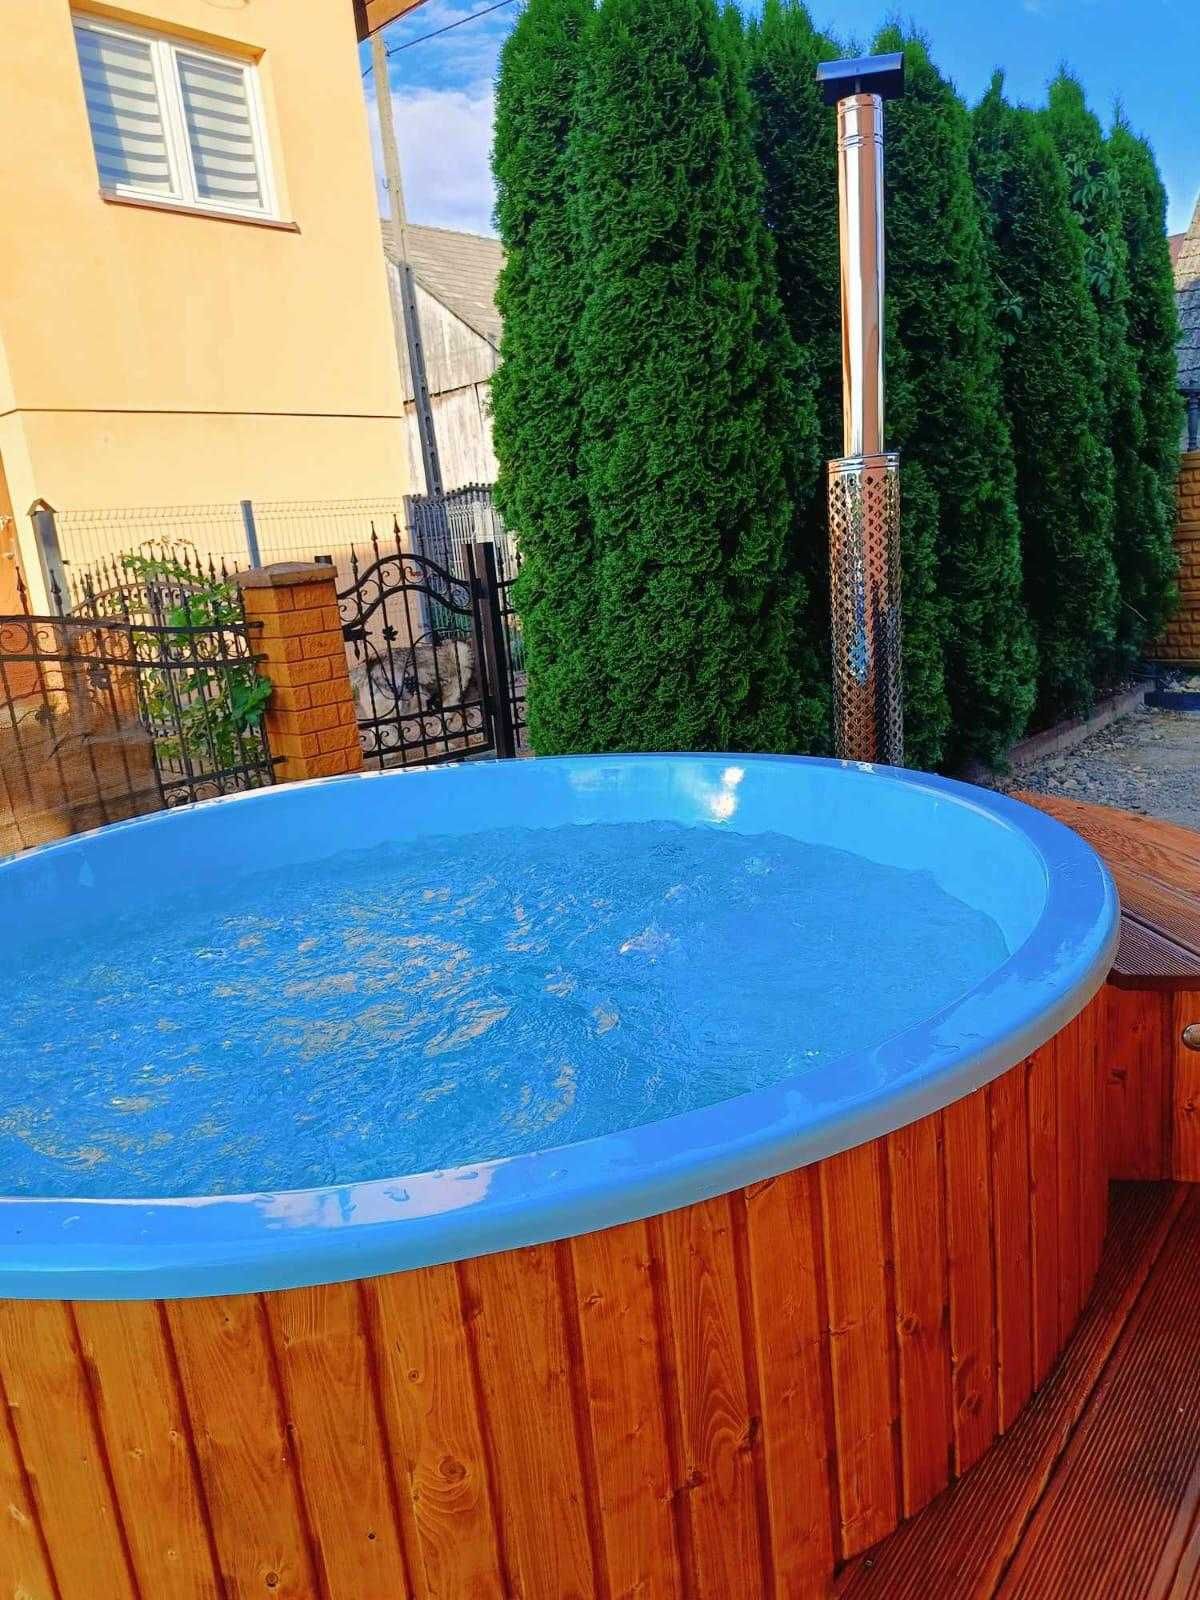 Ruska bania gorąca beczka jacuzzi basen elektryczna 220 cm